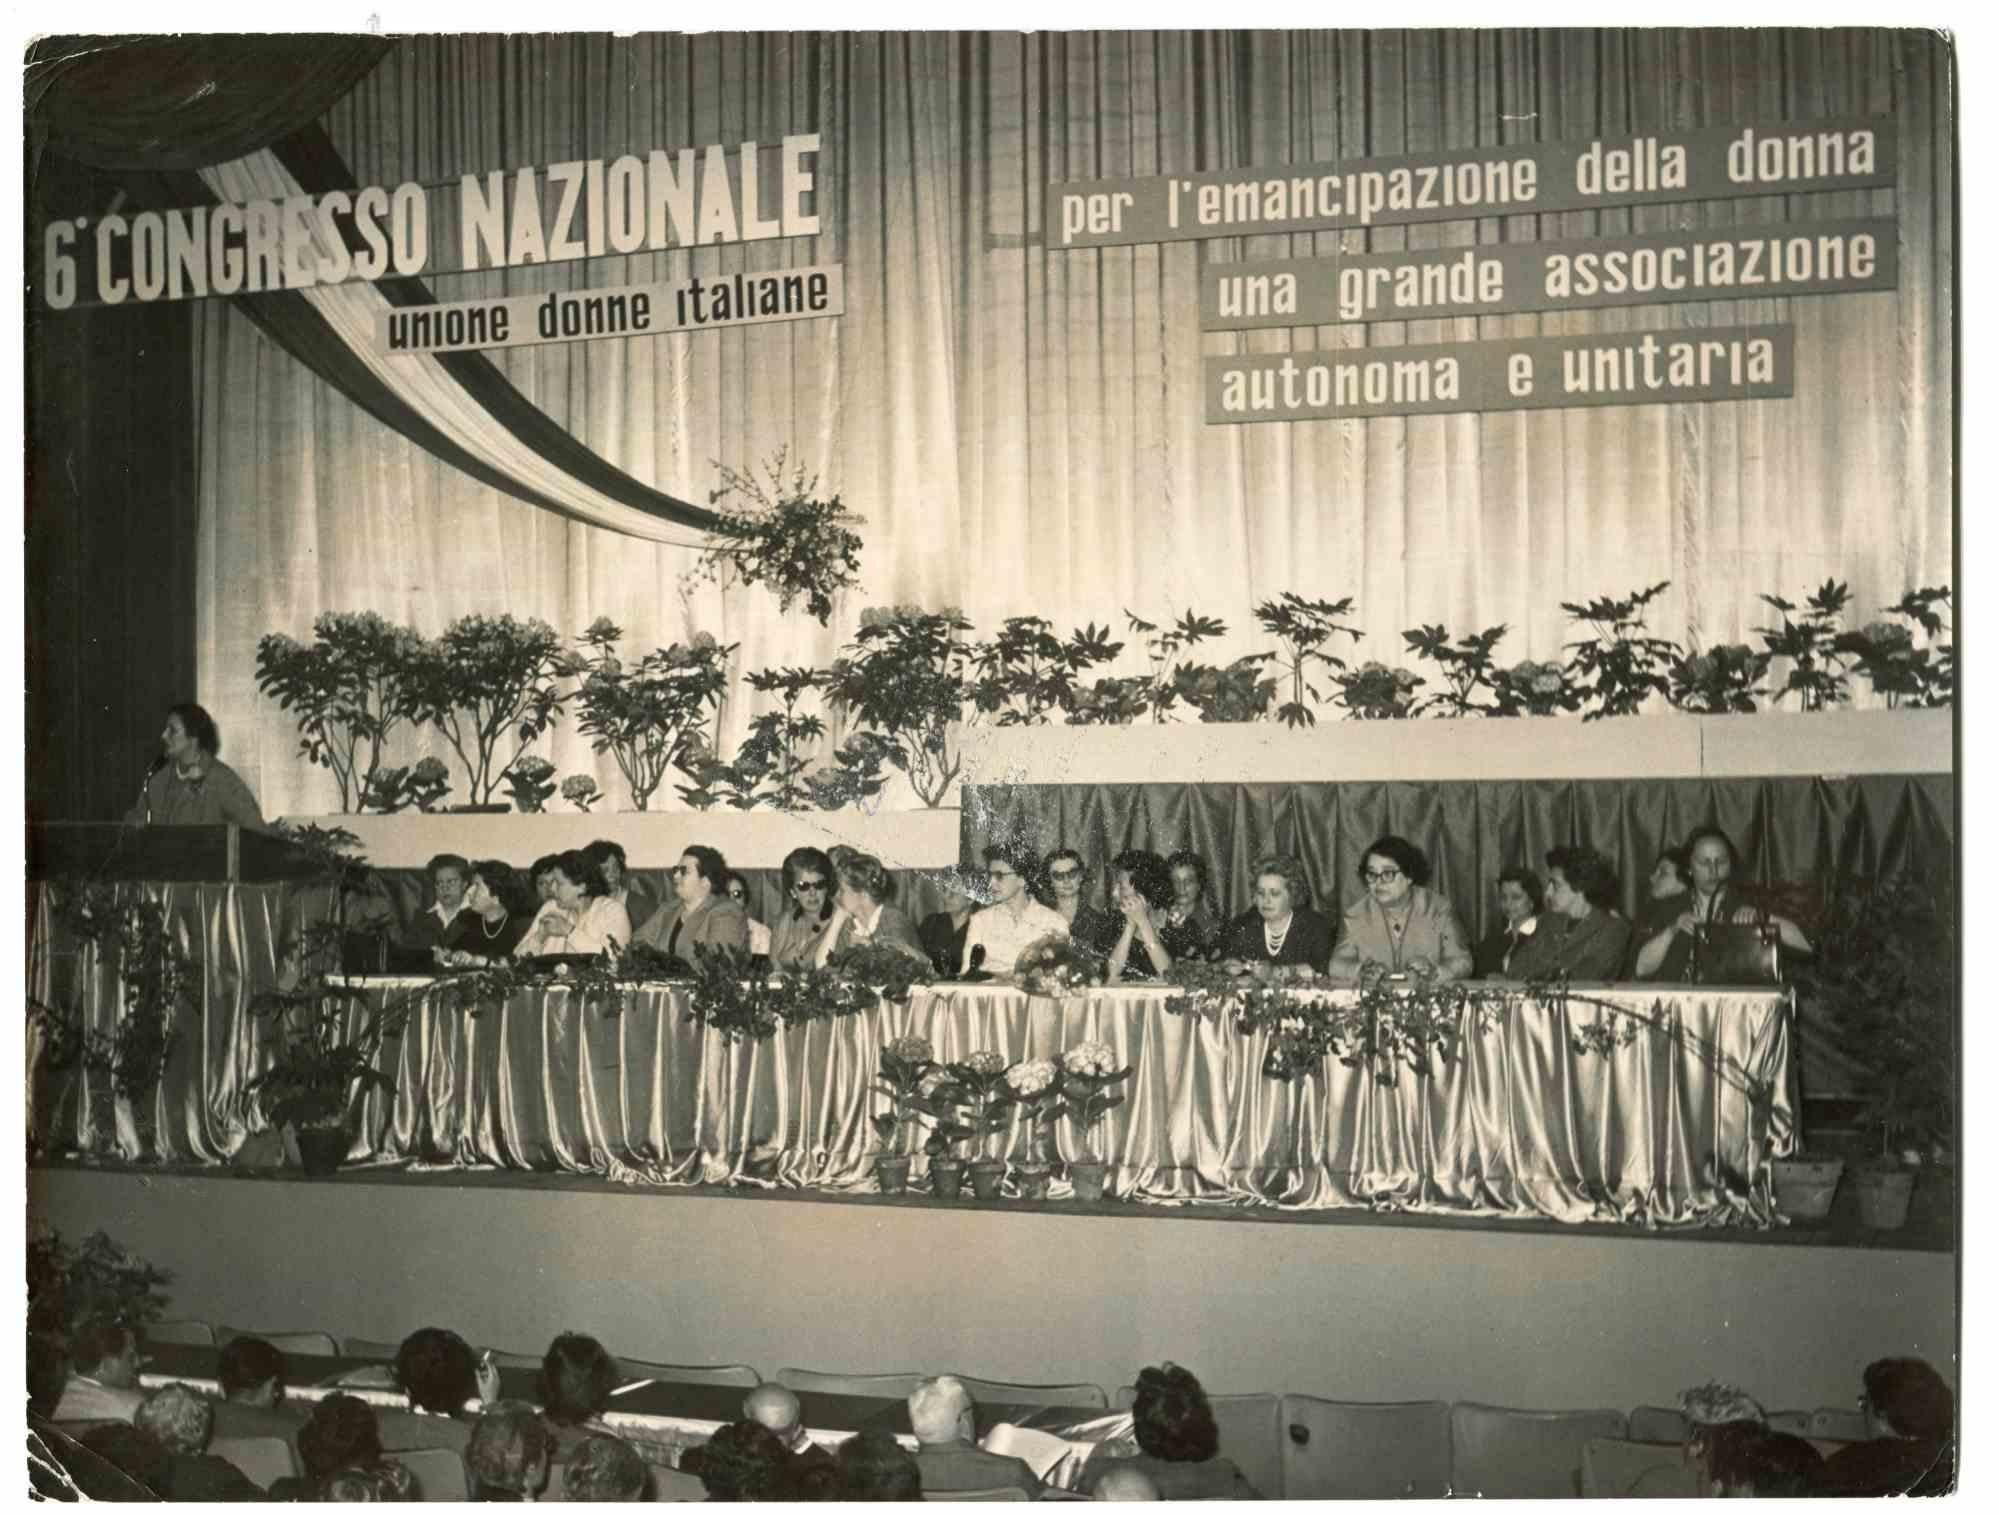 The National Congress – Historische Fotografie über die feministischen Bewegungen – 1950er Jahre